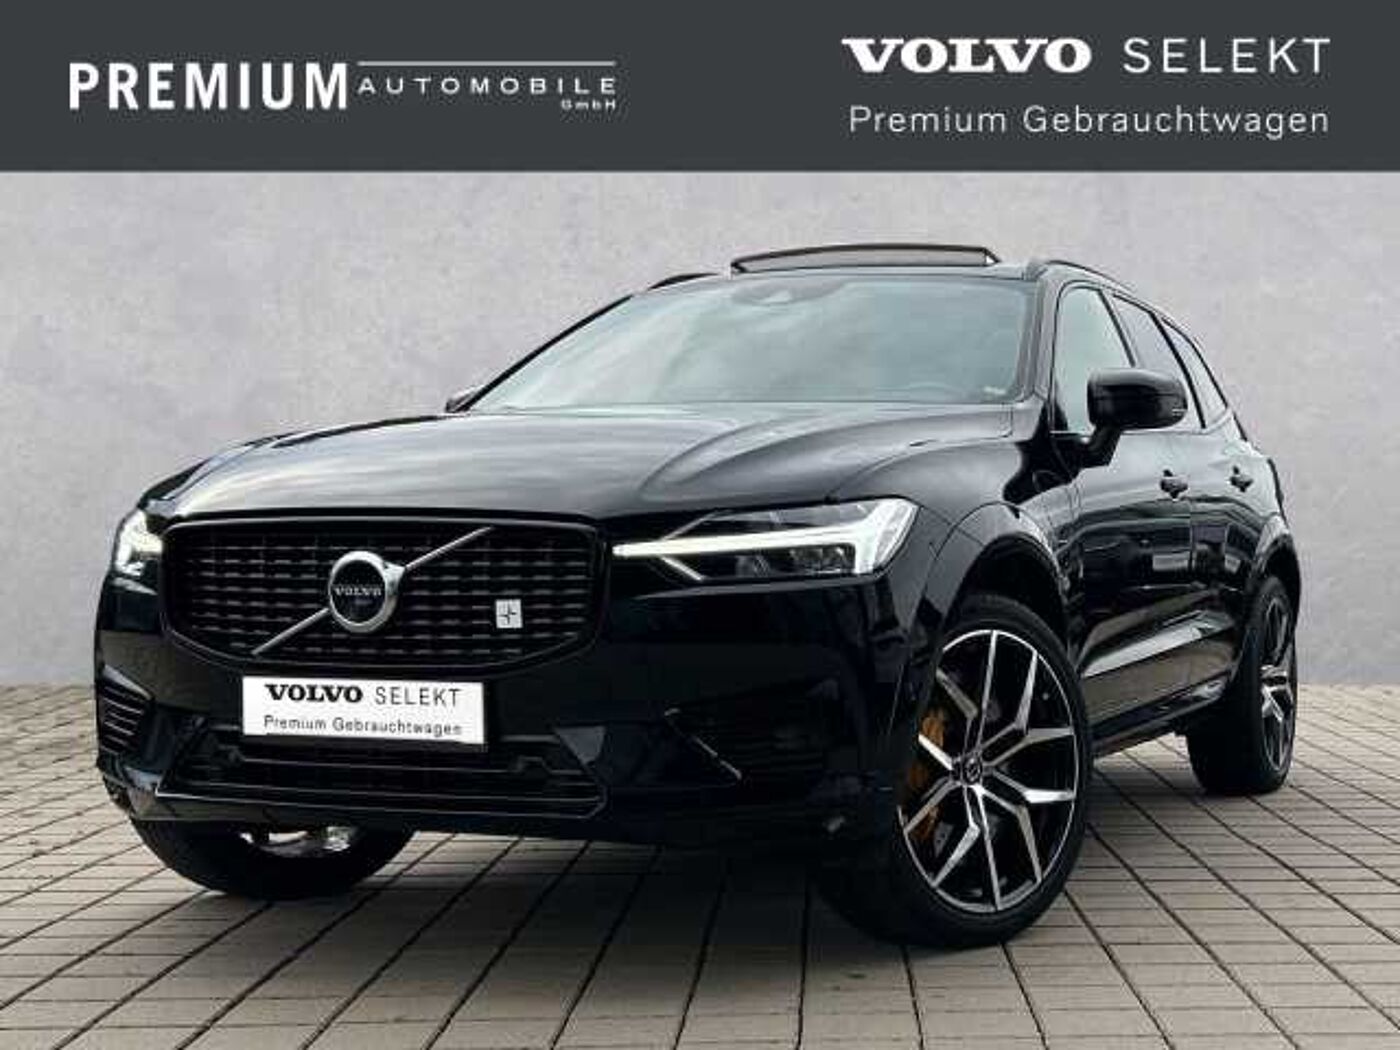 Volvo Zubehör – Premium Cars Koblenz